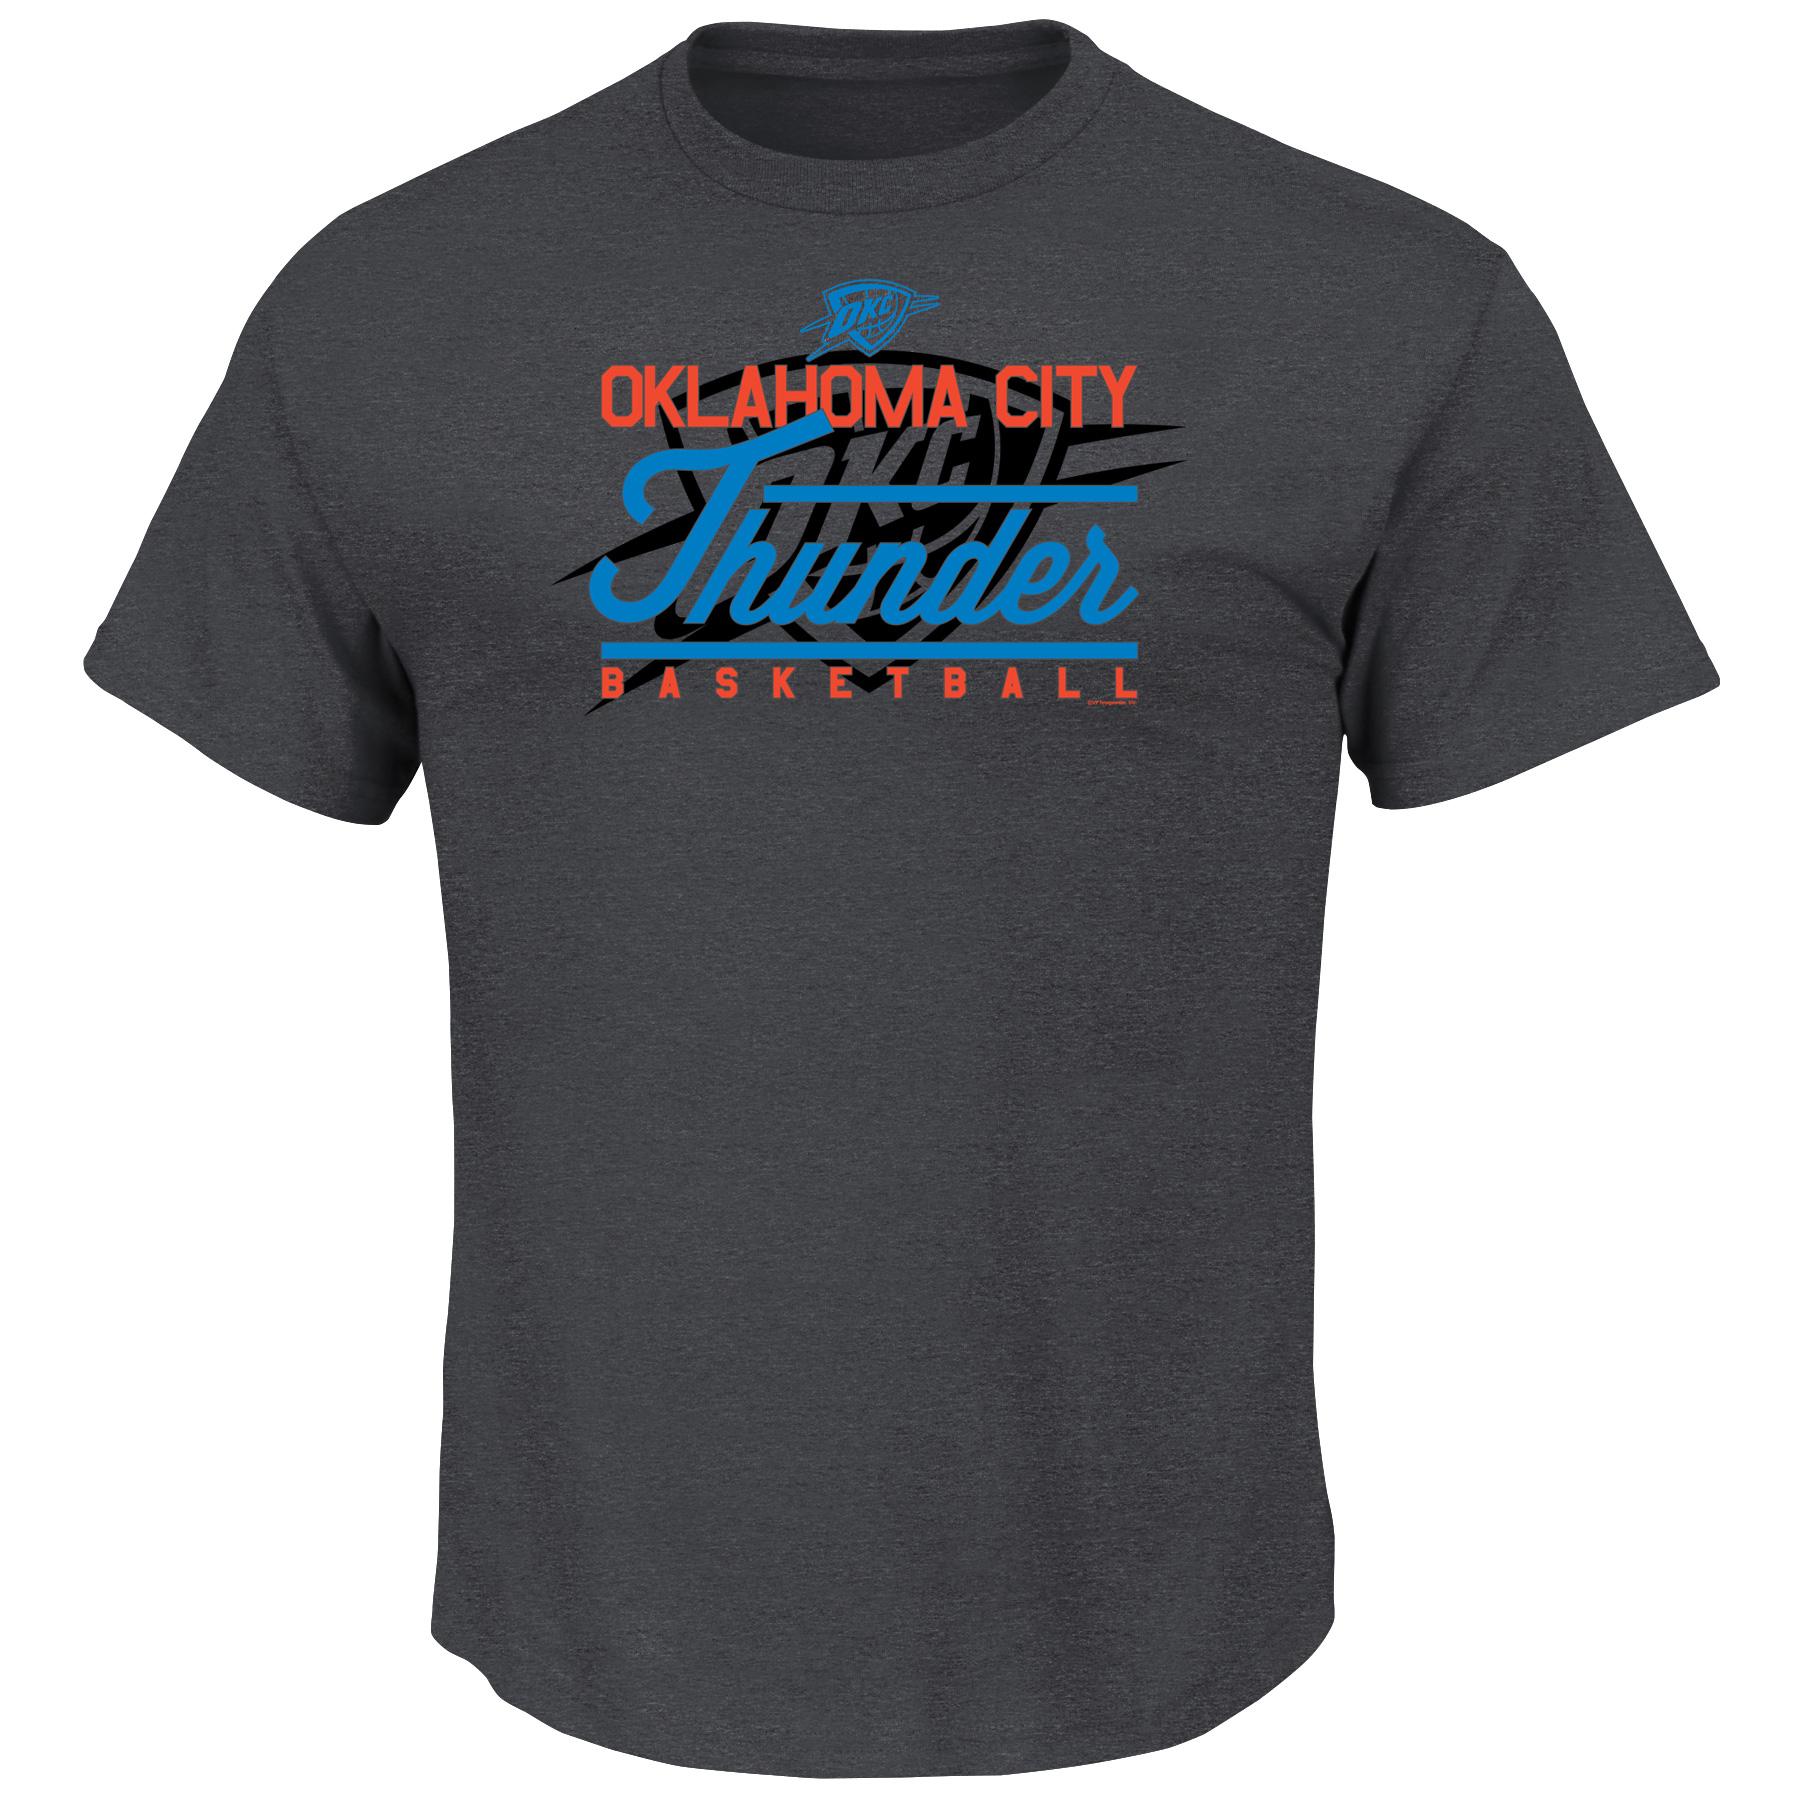 NBA(CANONICAL) Men's Gray Graphic T-Shirt - Oklahoma City Thunder